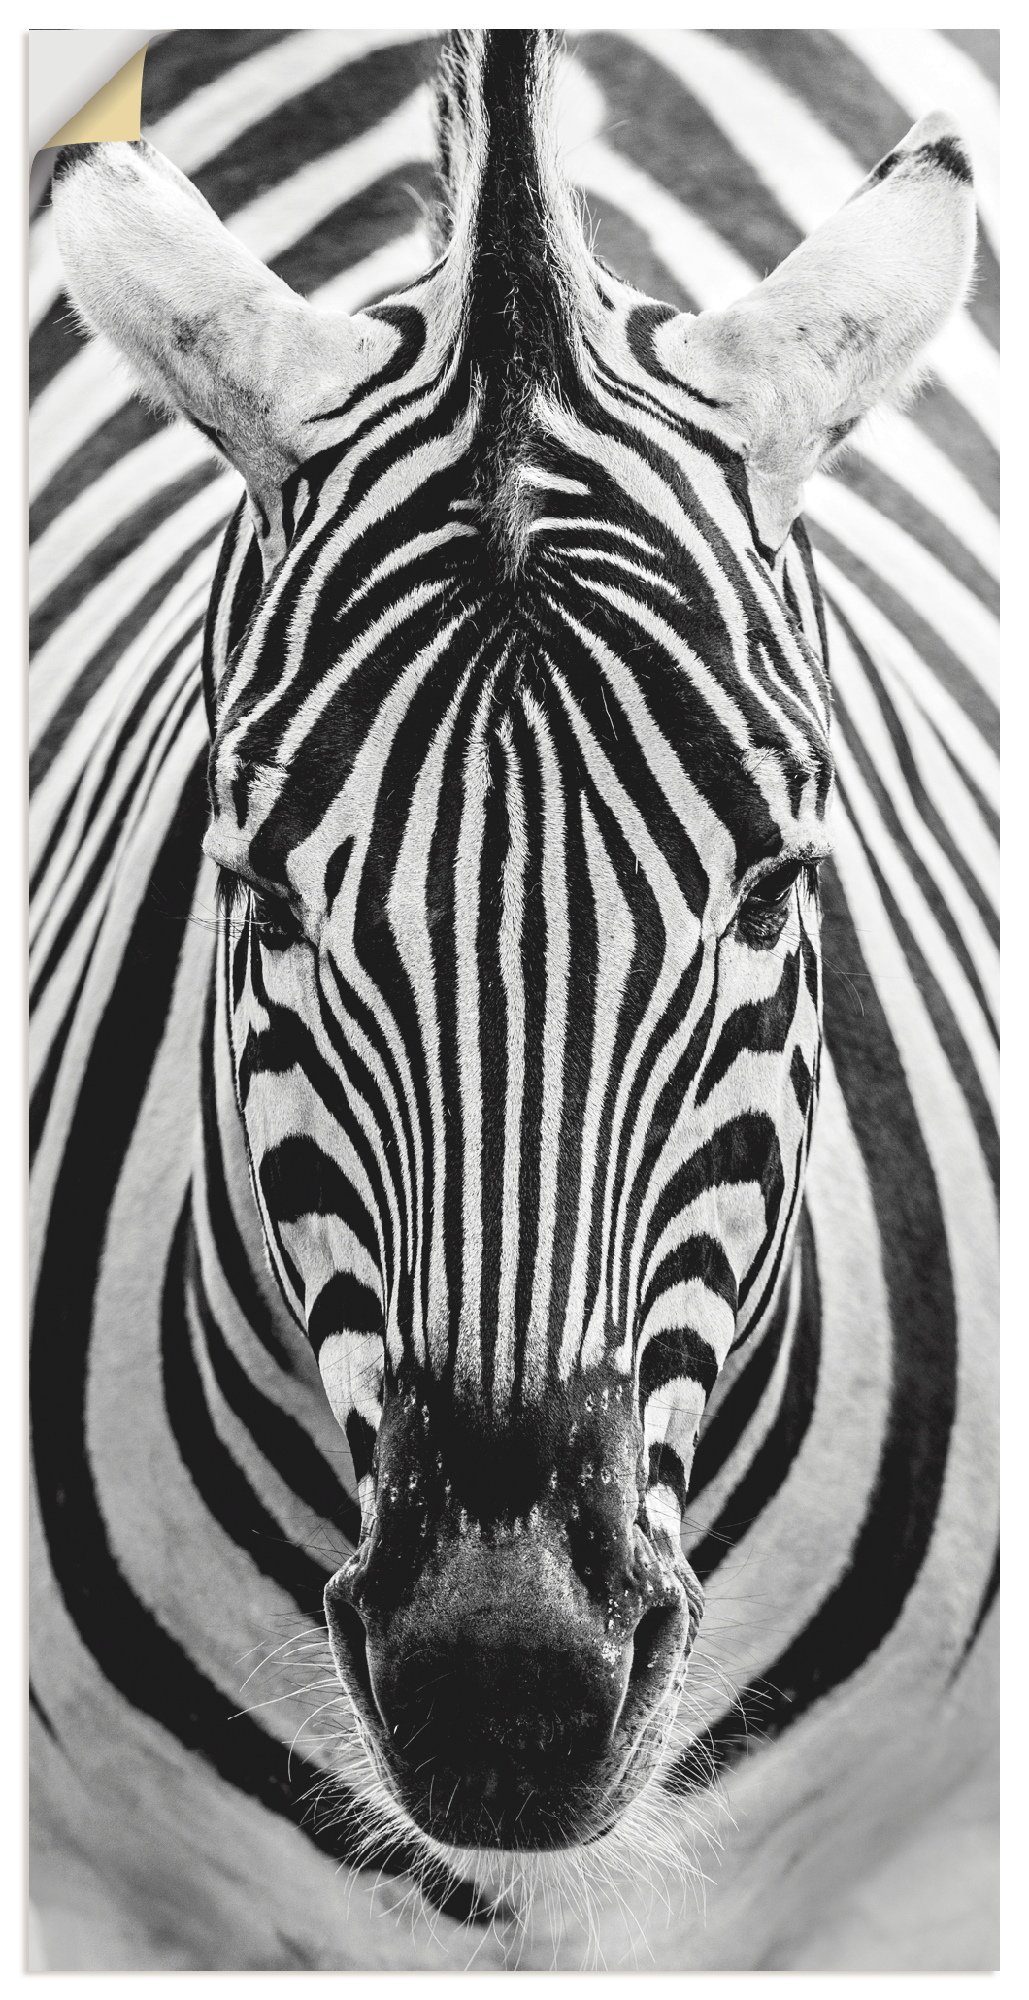 Artland Artprint Zebra in vele afmetingen & productsoorten - artprint van aluminium / artprint voor buiten, artprint op linnen, poster, muursticker / wandfolie ook geschikt voor de